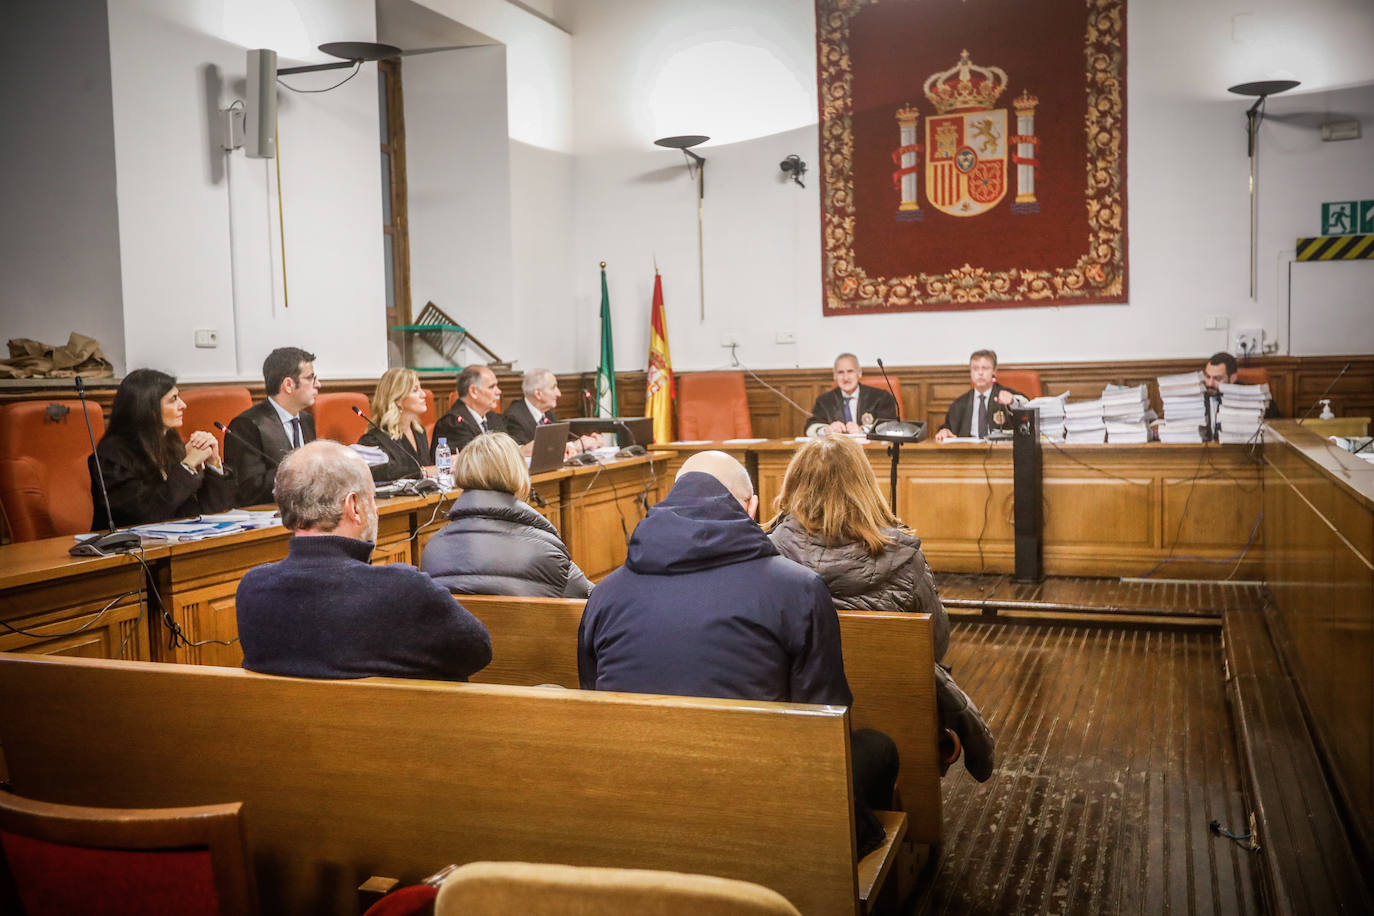 El fiscal mantiene su petición de 5 años de prisión para Villafranca por el caso audioguías